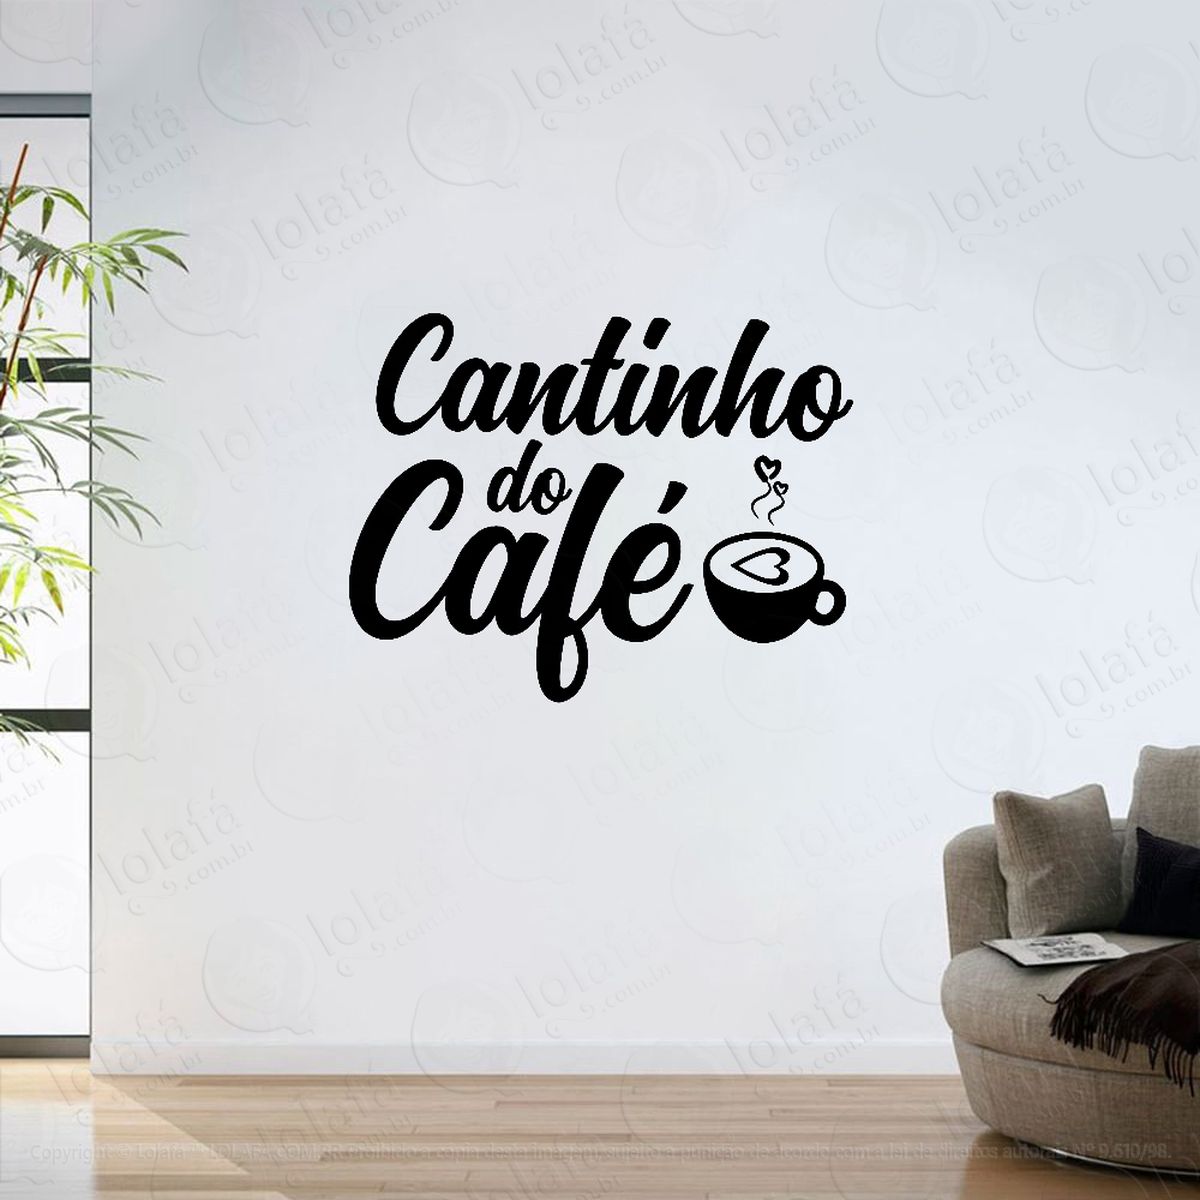 adesivo parede decorativo cantinho do café mod:6215